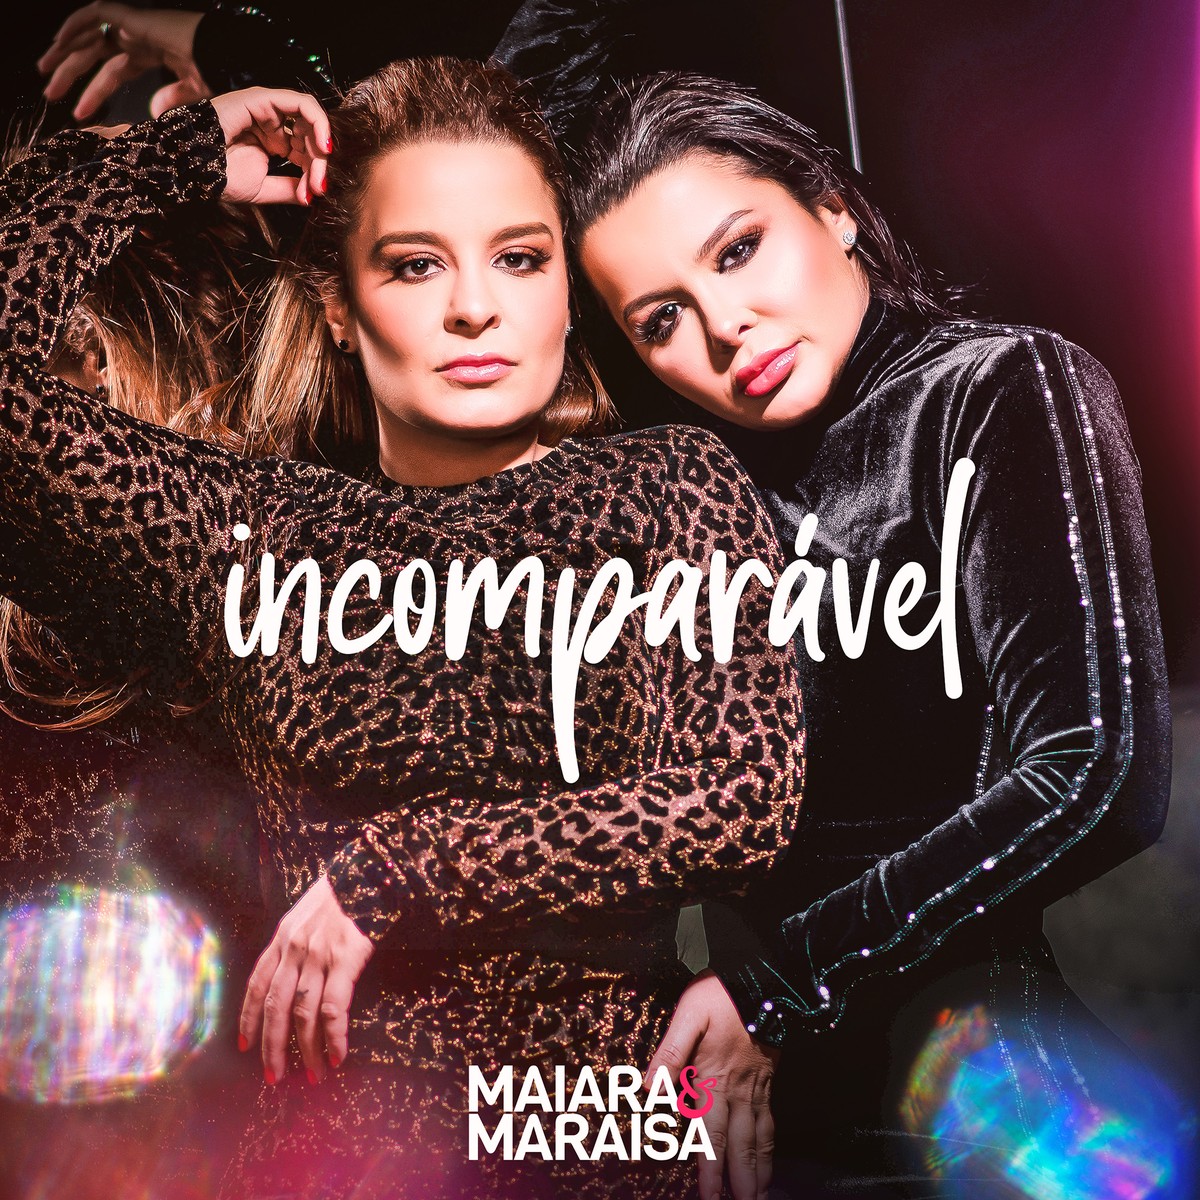 Maiara & Maraisa revivem hits da dupla Chrystian & Ralf entre as faixas que completam o disco ‘Incomparável’ | Blog do Mauro Ferreira